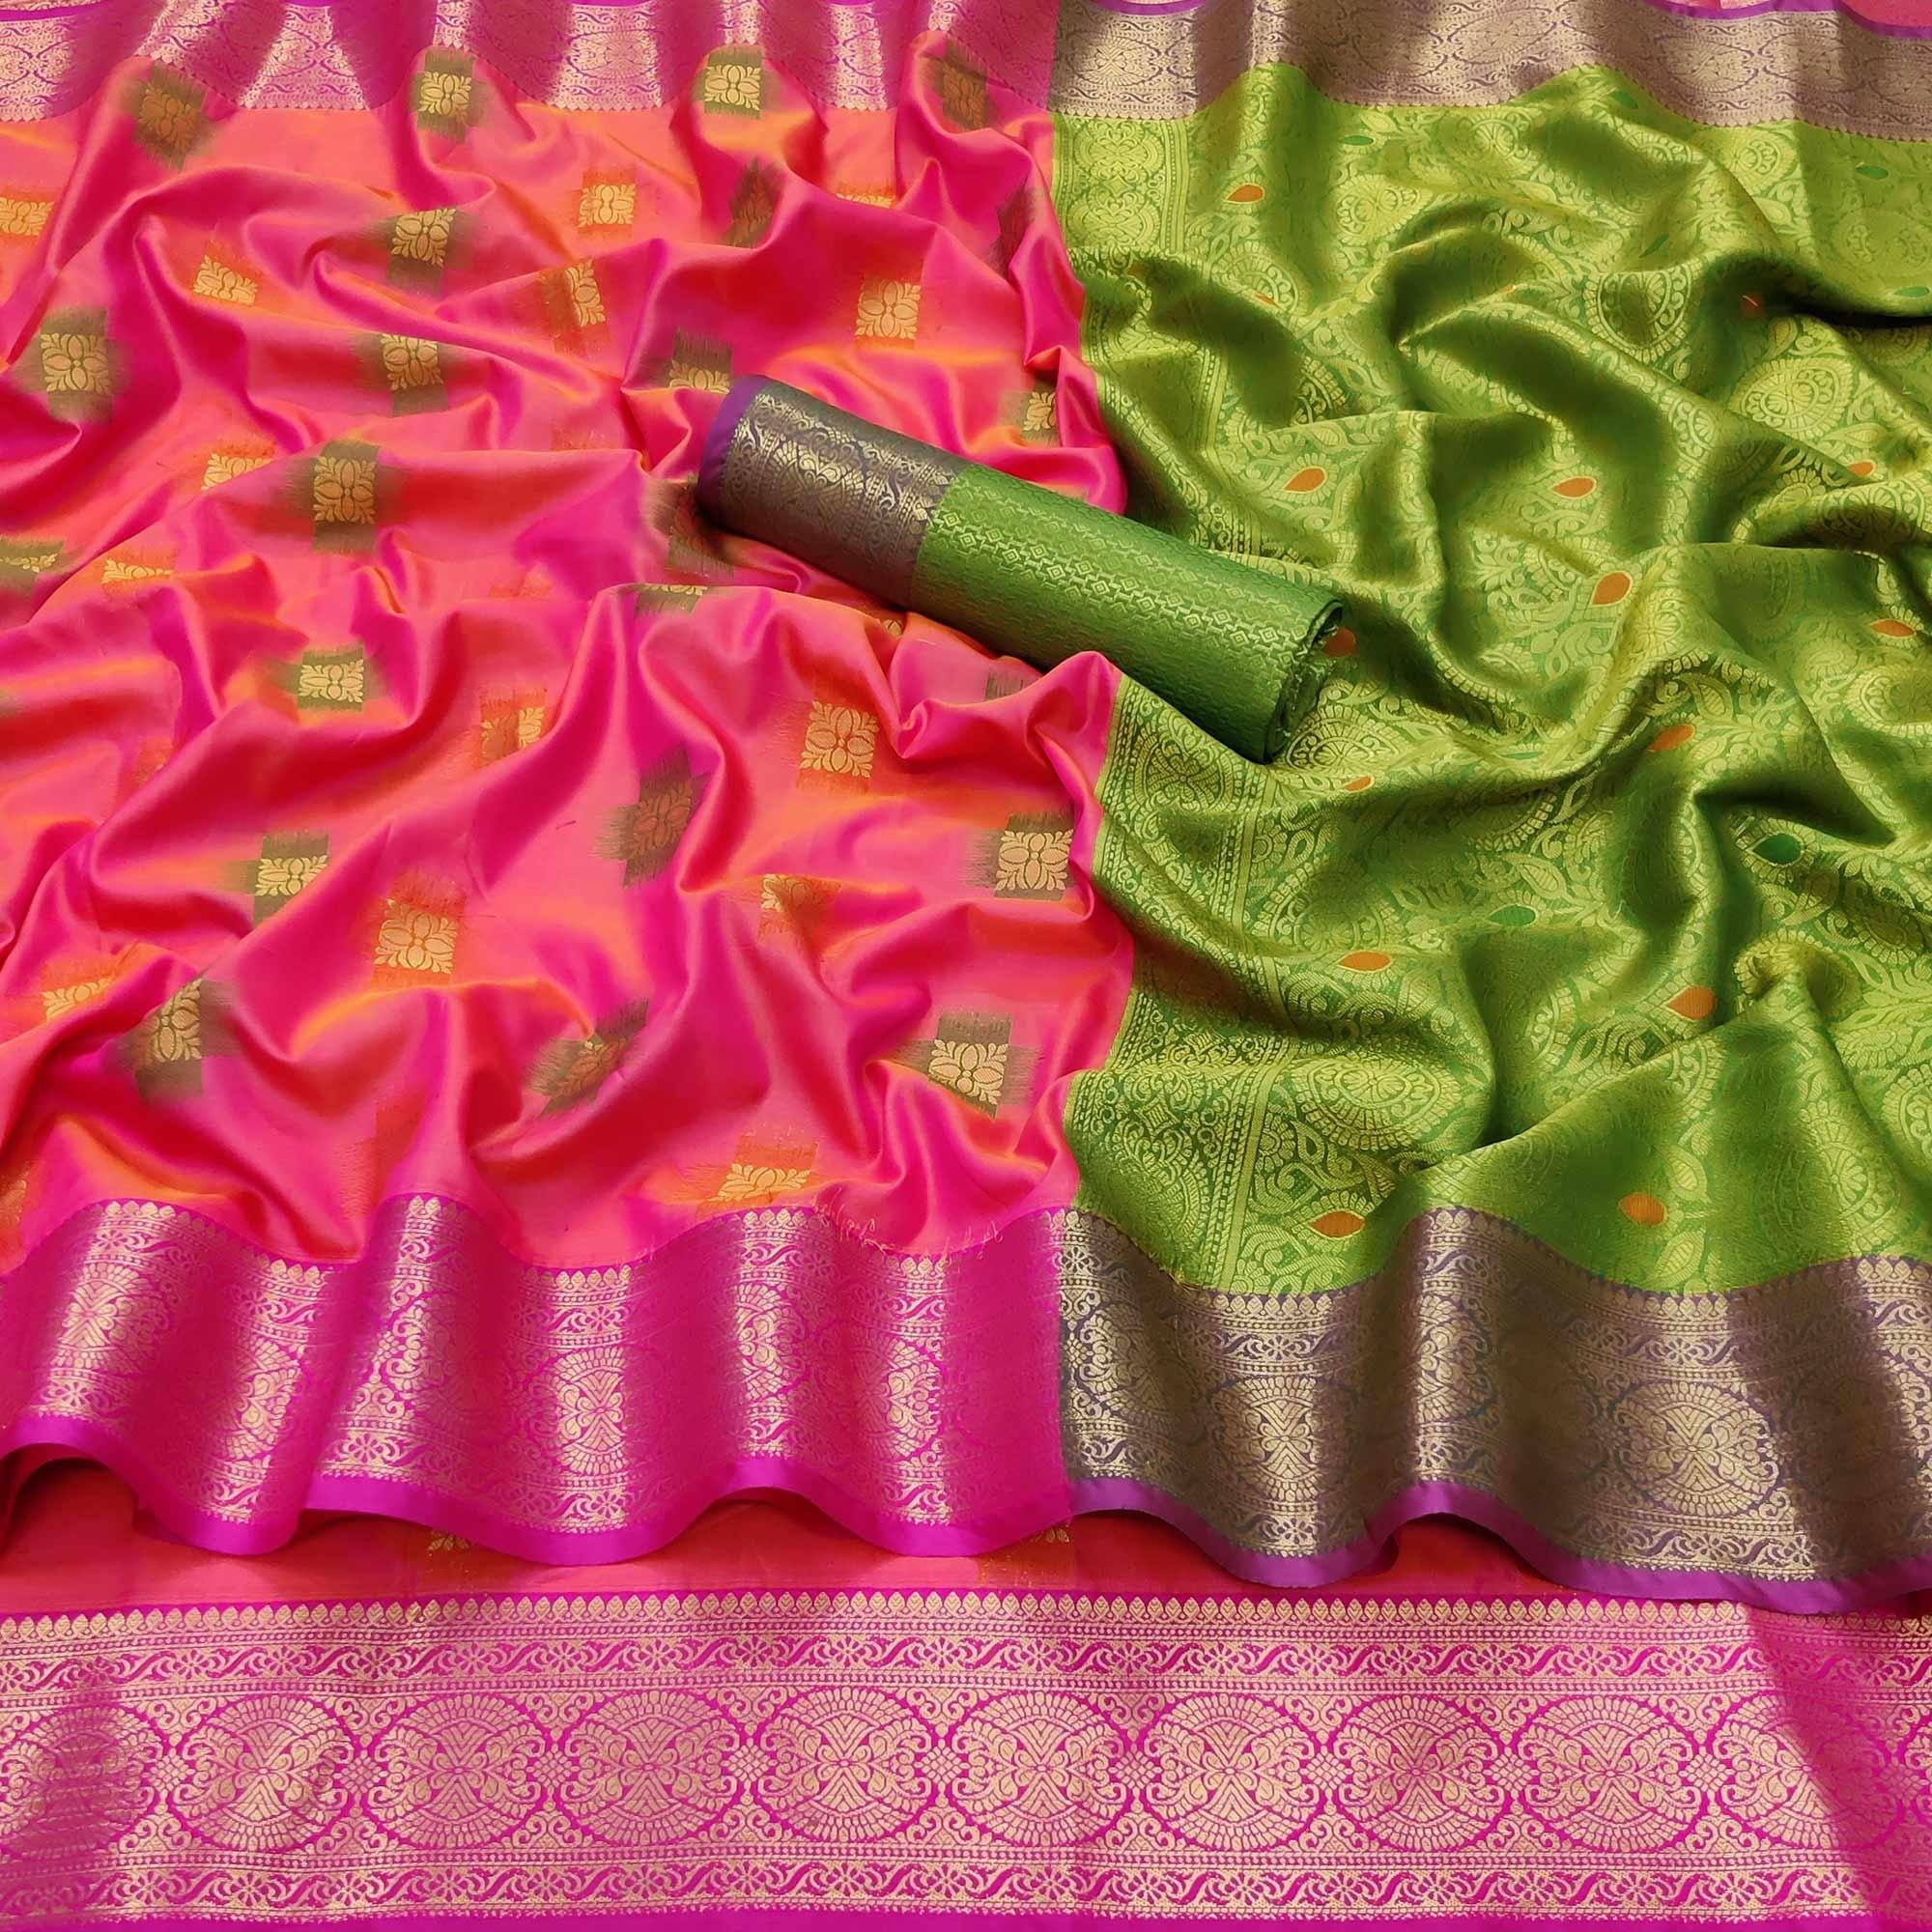 Rani Pink Festive Wear Woven Soft Banarasi Silk Saree - Peachmode